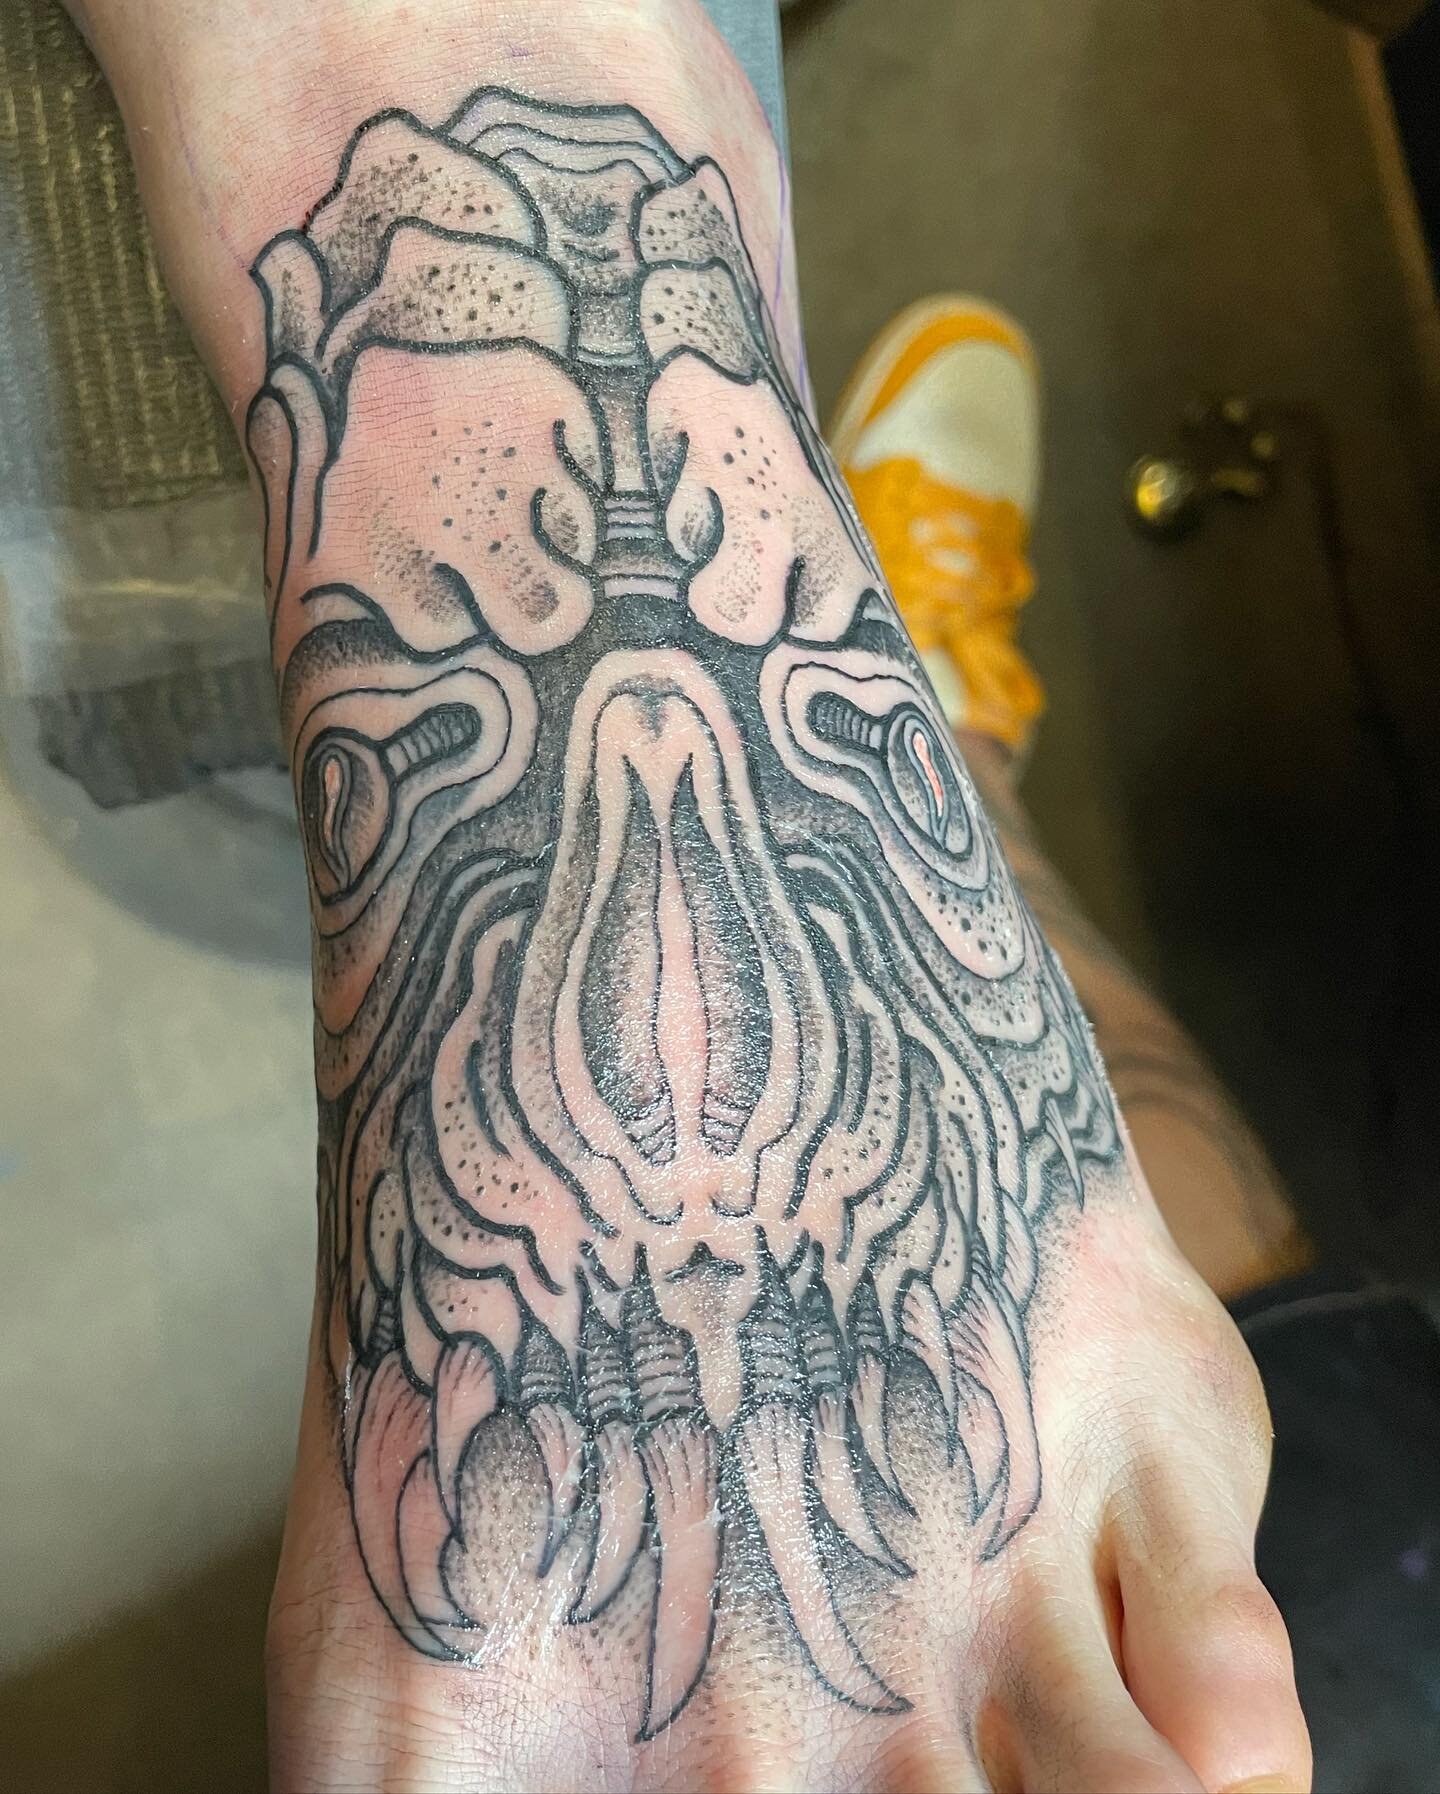 100 Kraken Tattoo Designs For Men  Sea Monster Ink Ideas